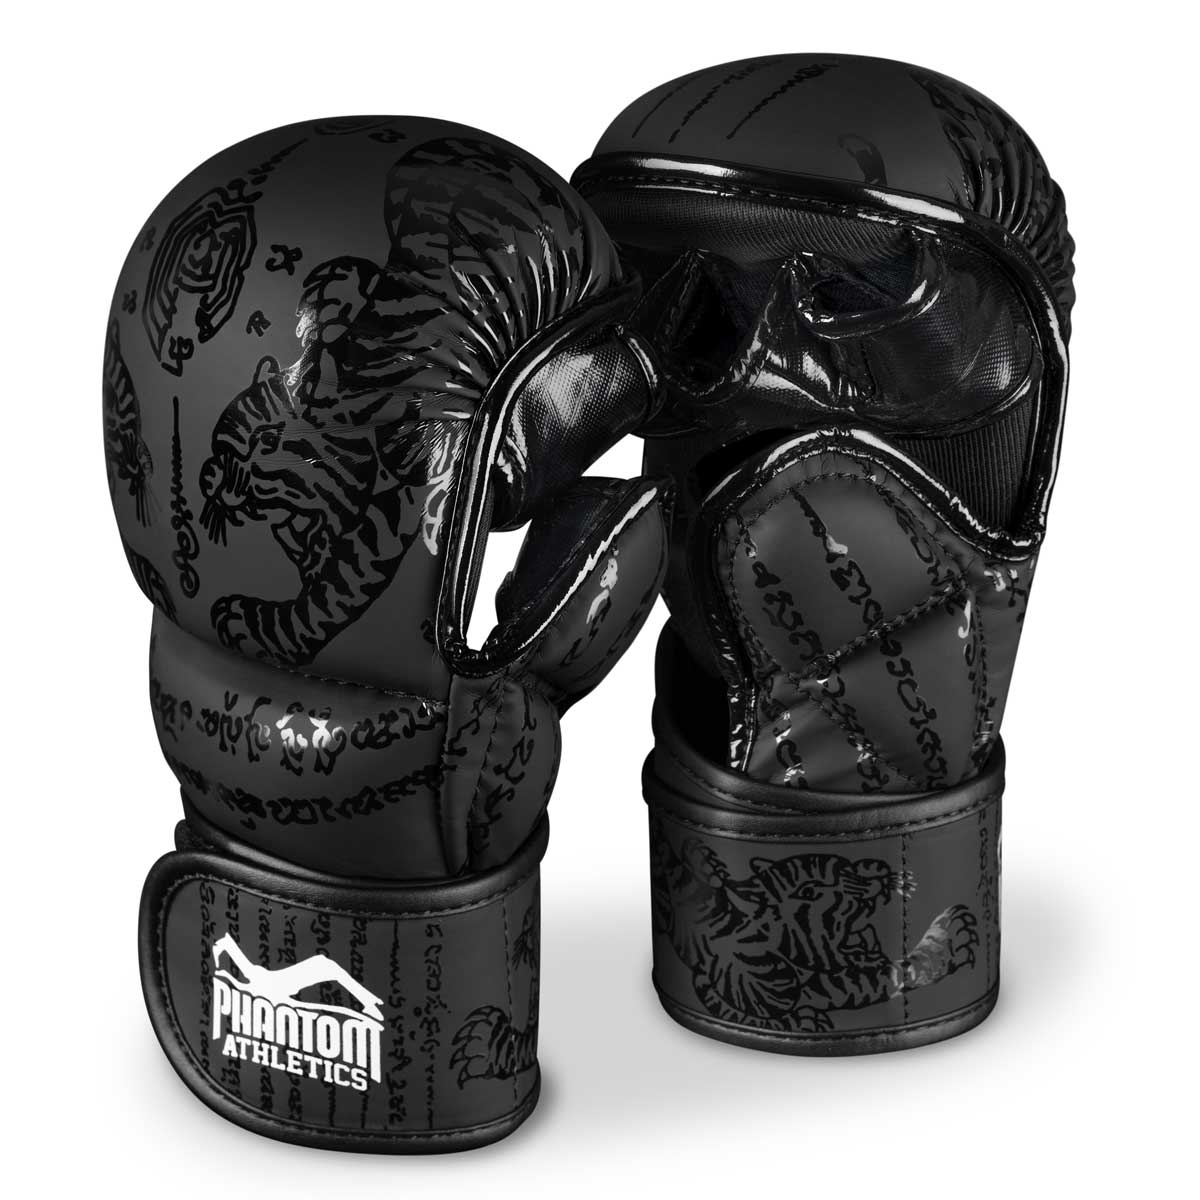 Sparringshandschuhe für MMA und Muay Thai mit schlichtem, thailändischem Tiger Design.